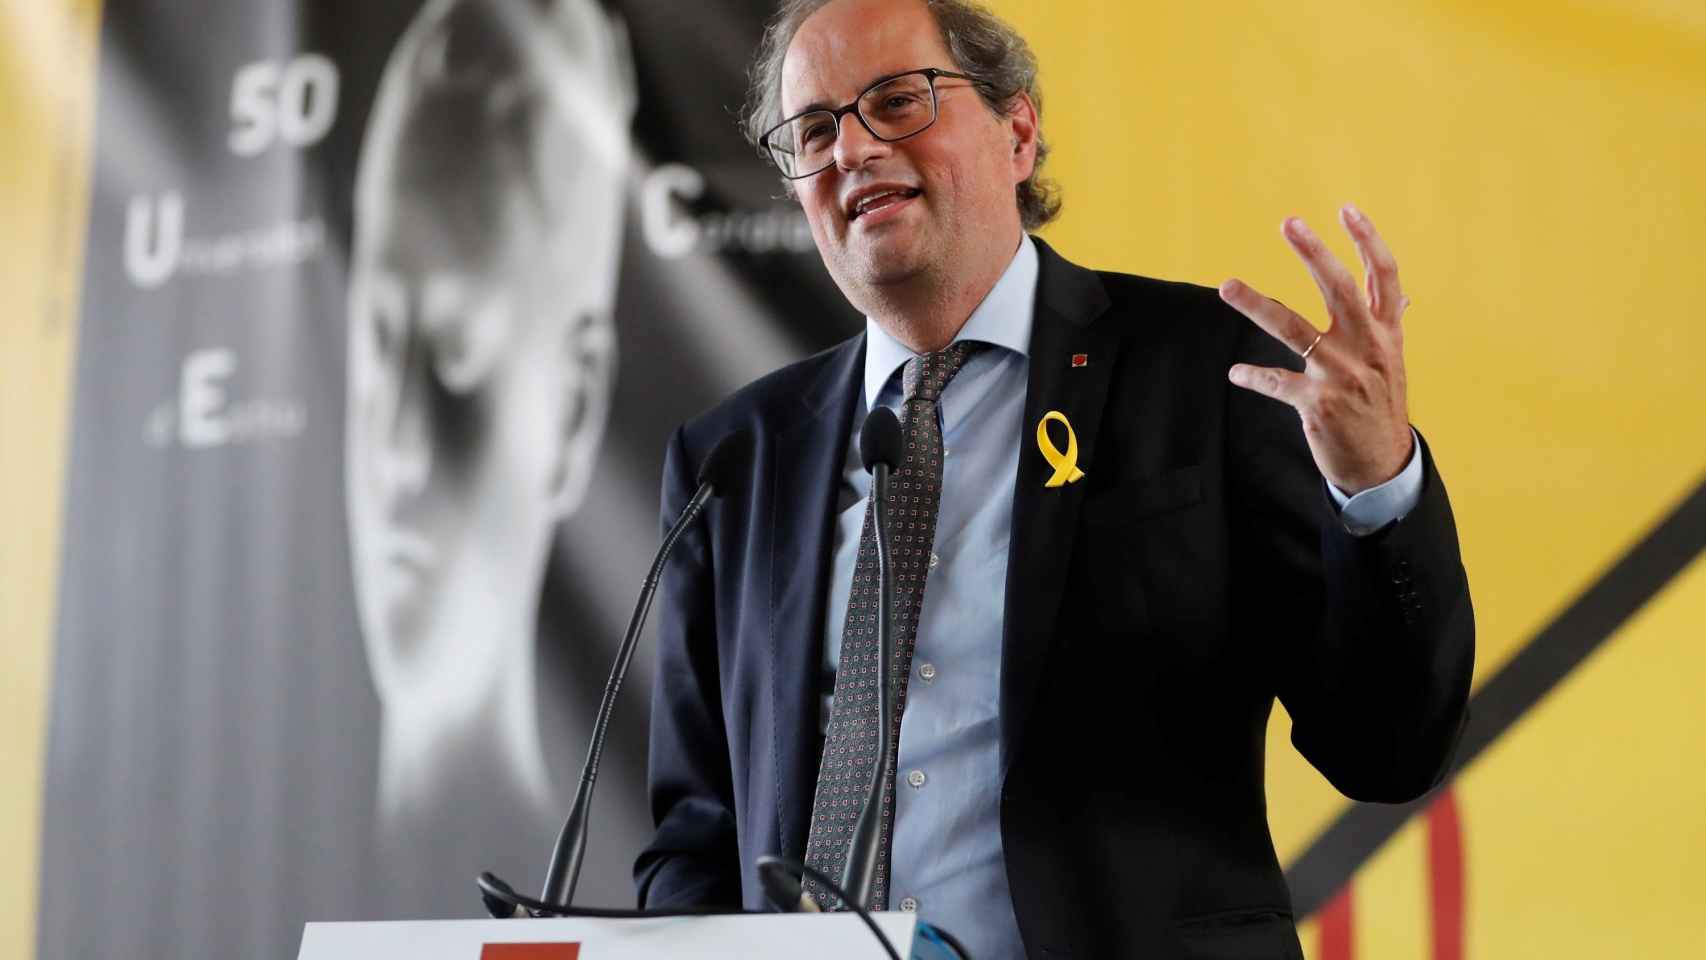 El presidente de la Generalitat de Cataluña, Quim Torra, durante un discurso el jueves en la localidad gala de Prada.